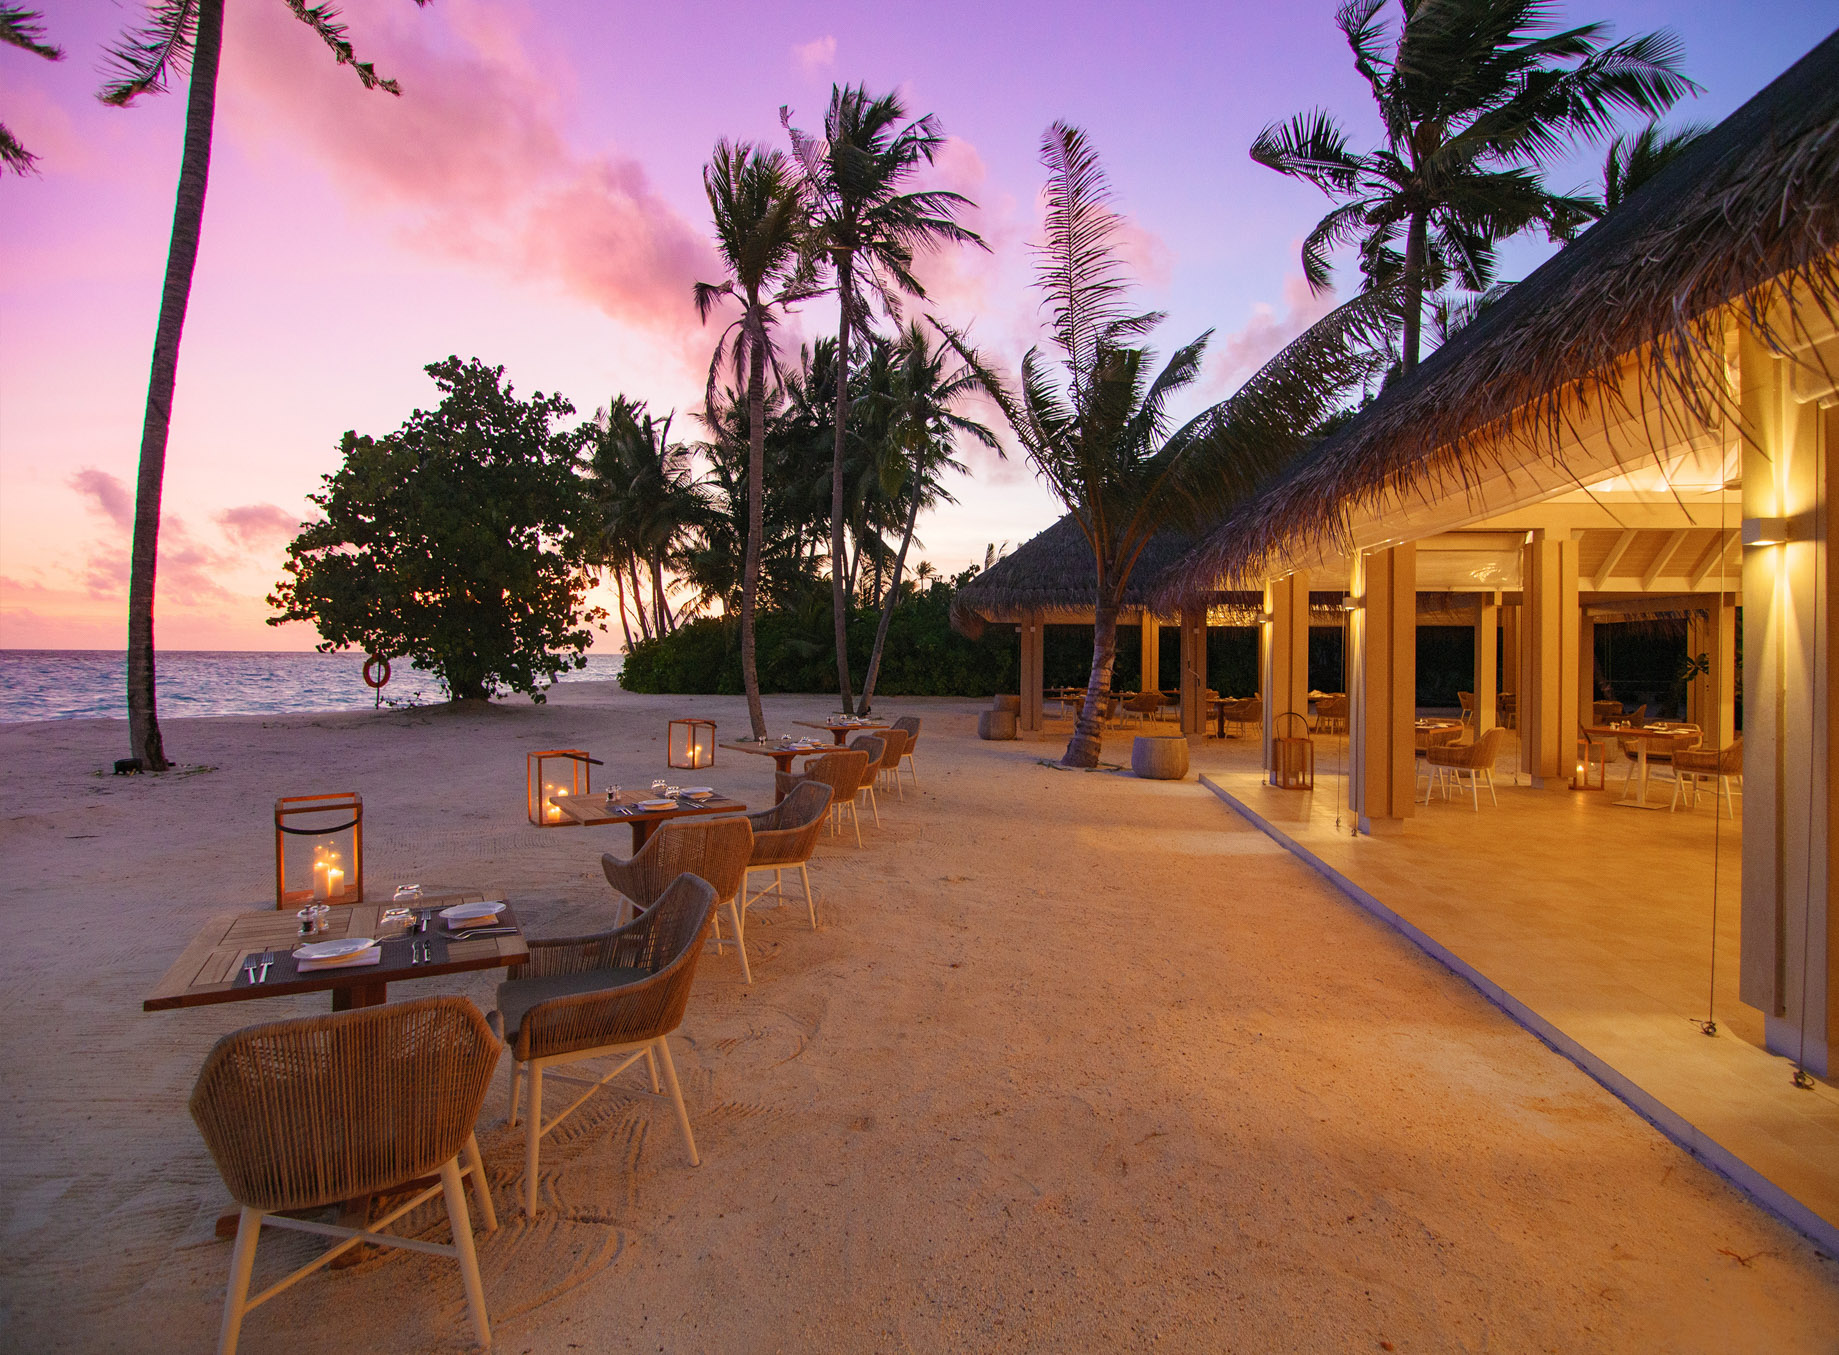 Baglioni Resort Maldives – Maagau Island, Rinbudhoo, Maldives – Taste Restaurant Sunset